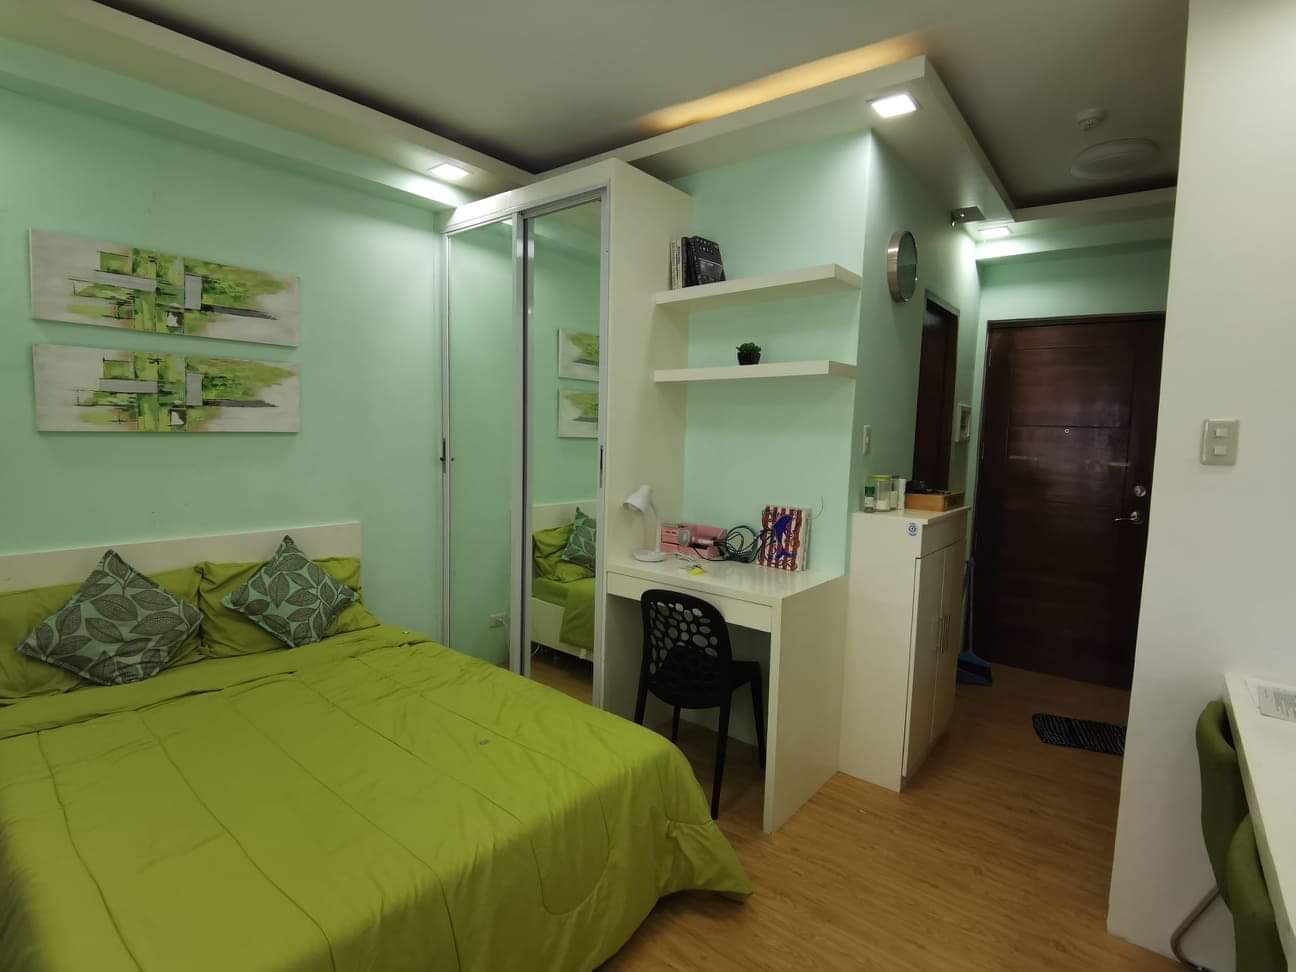 20sqm Studio Condominium @ Cebu City for SALE